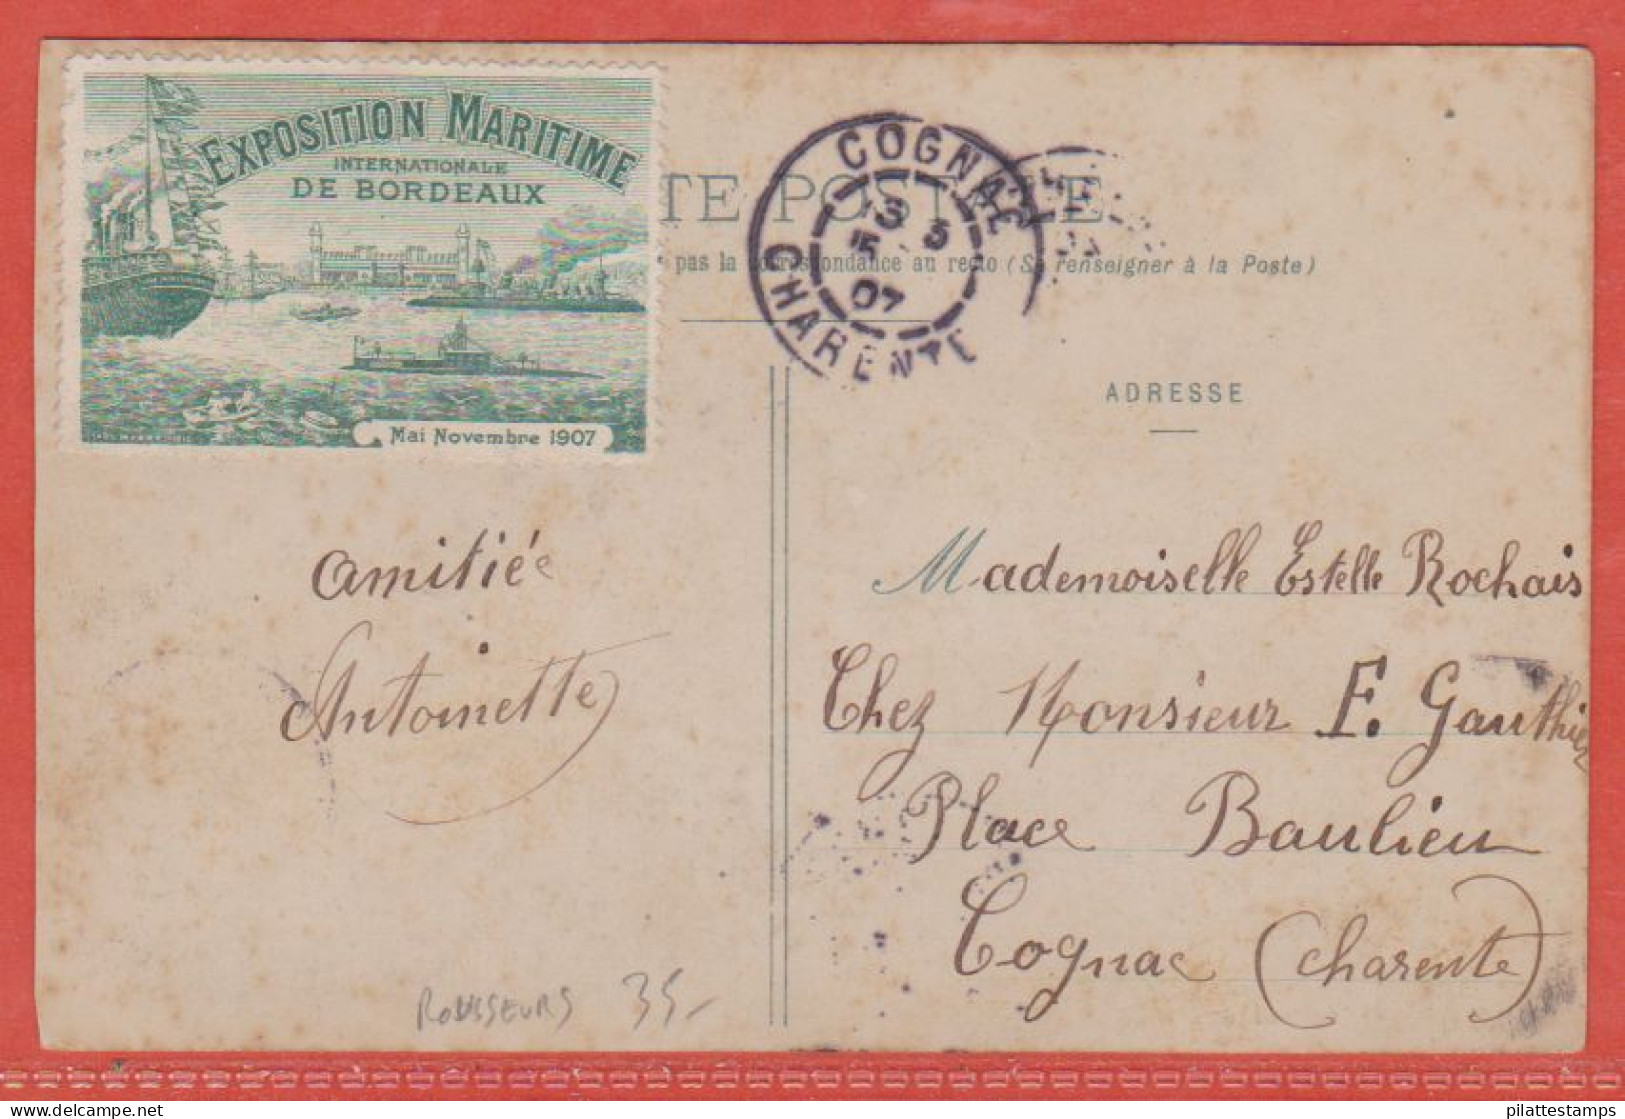 FRANCE VIGNETTE EXPO MARITIME SUR CARTE POSTALE DE 1907 DE BORDEAUX (ROUSSEURS) - Expositions Philatéliques